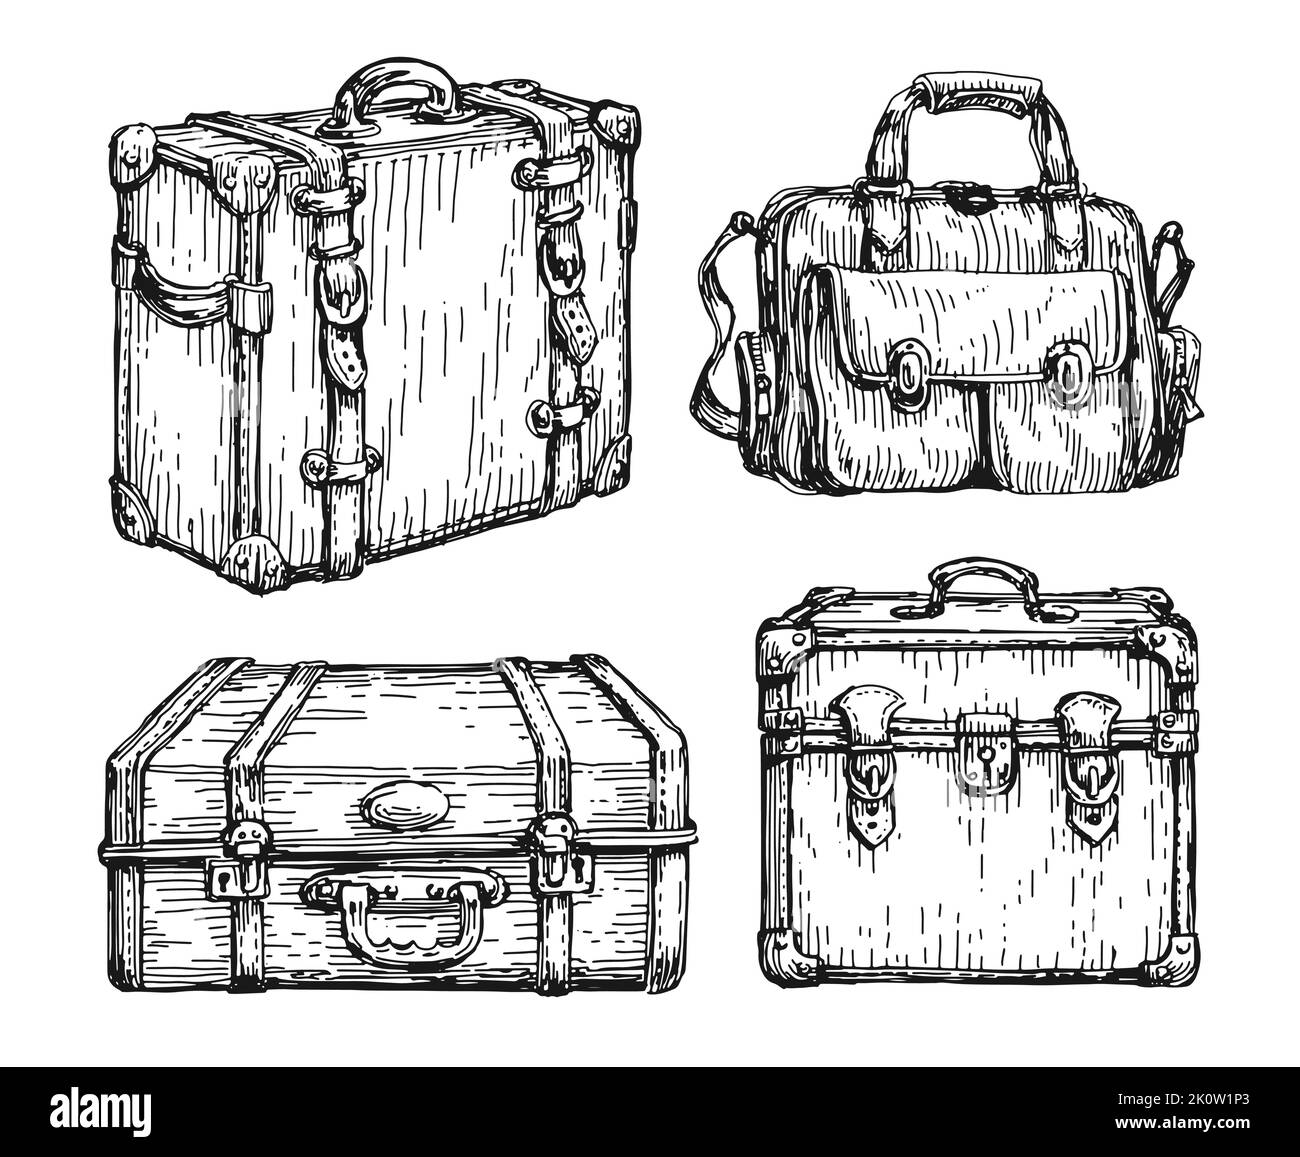 Juego de maletas y bolsas retro. Boceto para equipaje, dibujado a mano en estilo vintage. Recorrido, ilustración vectorial del concepto de viaje Ilustración del Vector